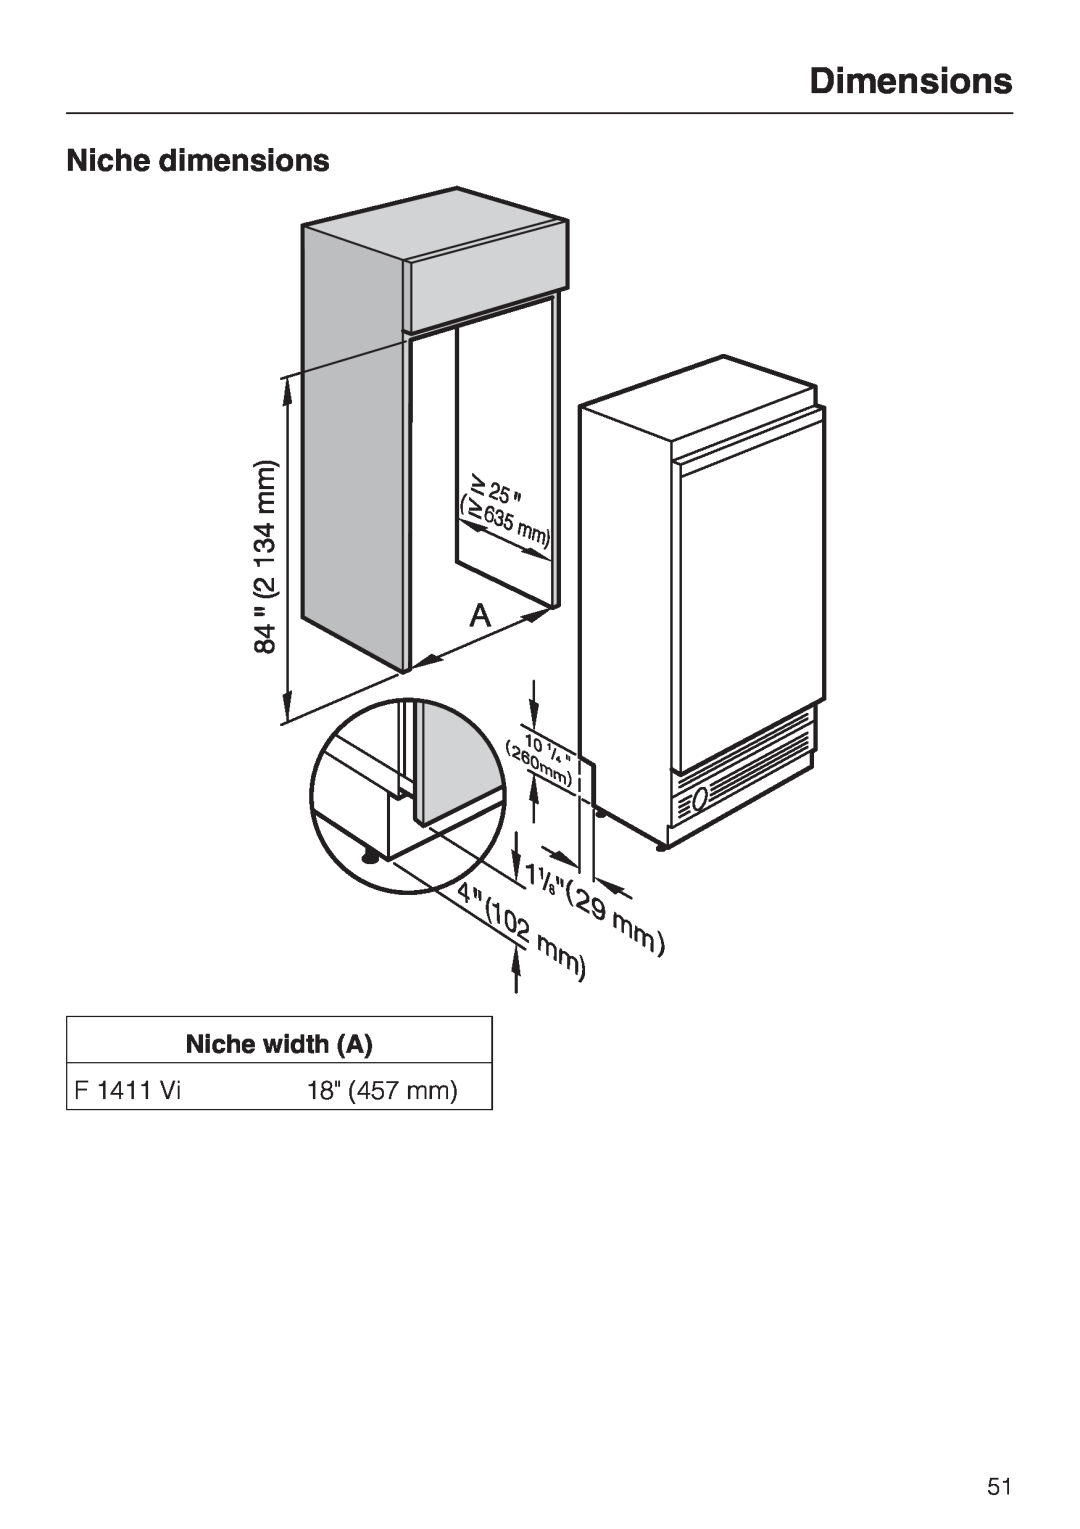 Miele F 1411 Vi installation instructions Niche dimensions, Dimensions, Niche width A 